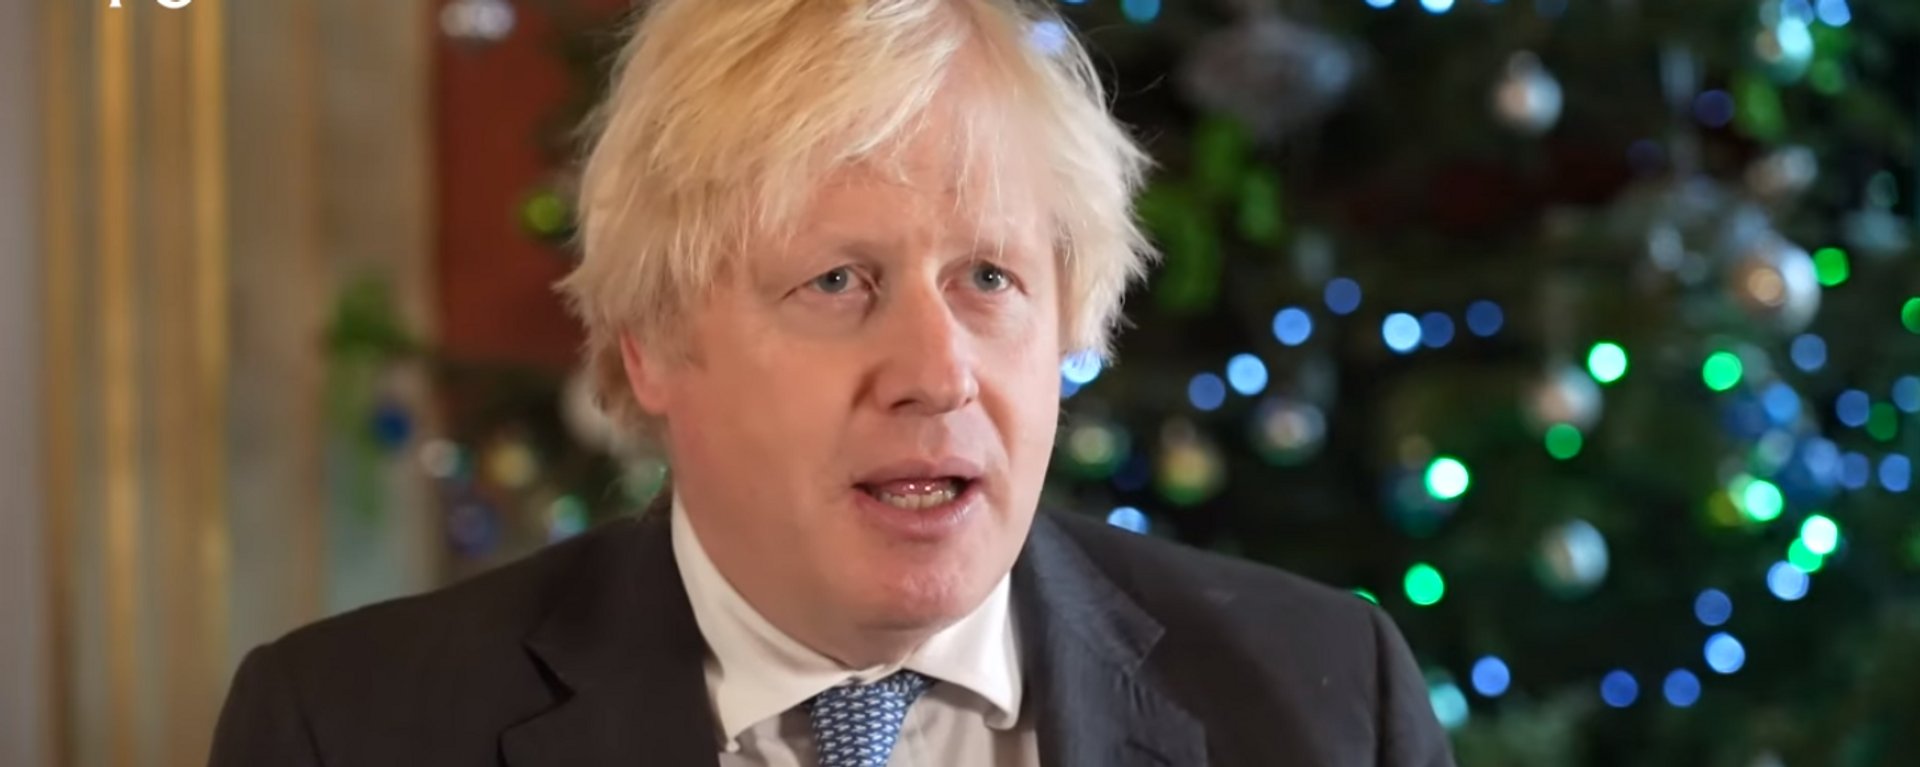 Boris Johnson, primer ministro de Reino Unido, durante su mensaje de Navidad a las Islas Malvinas, el 23 de diciembre del 2021 - Sputnik Mundo, 1920, 26.12.2021